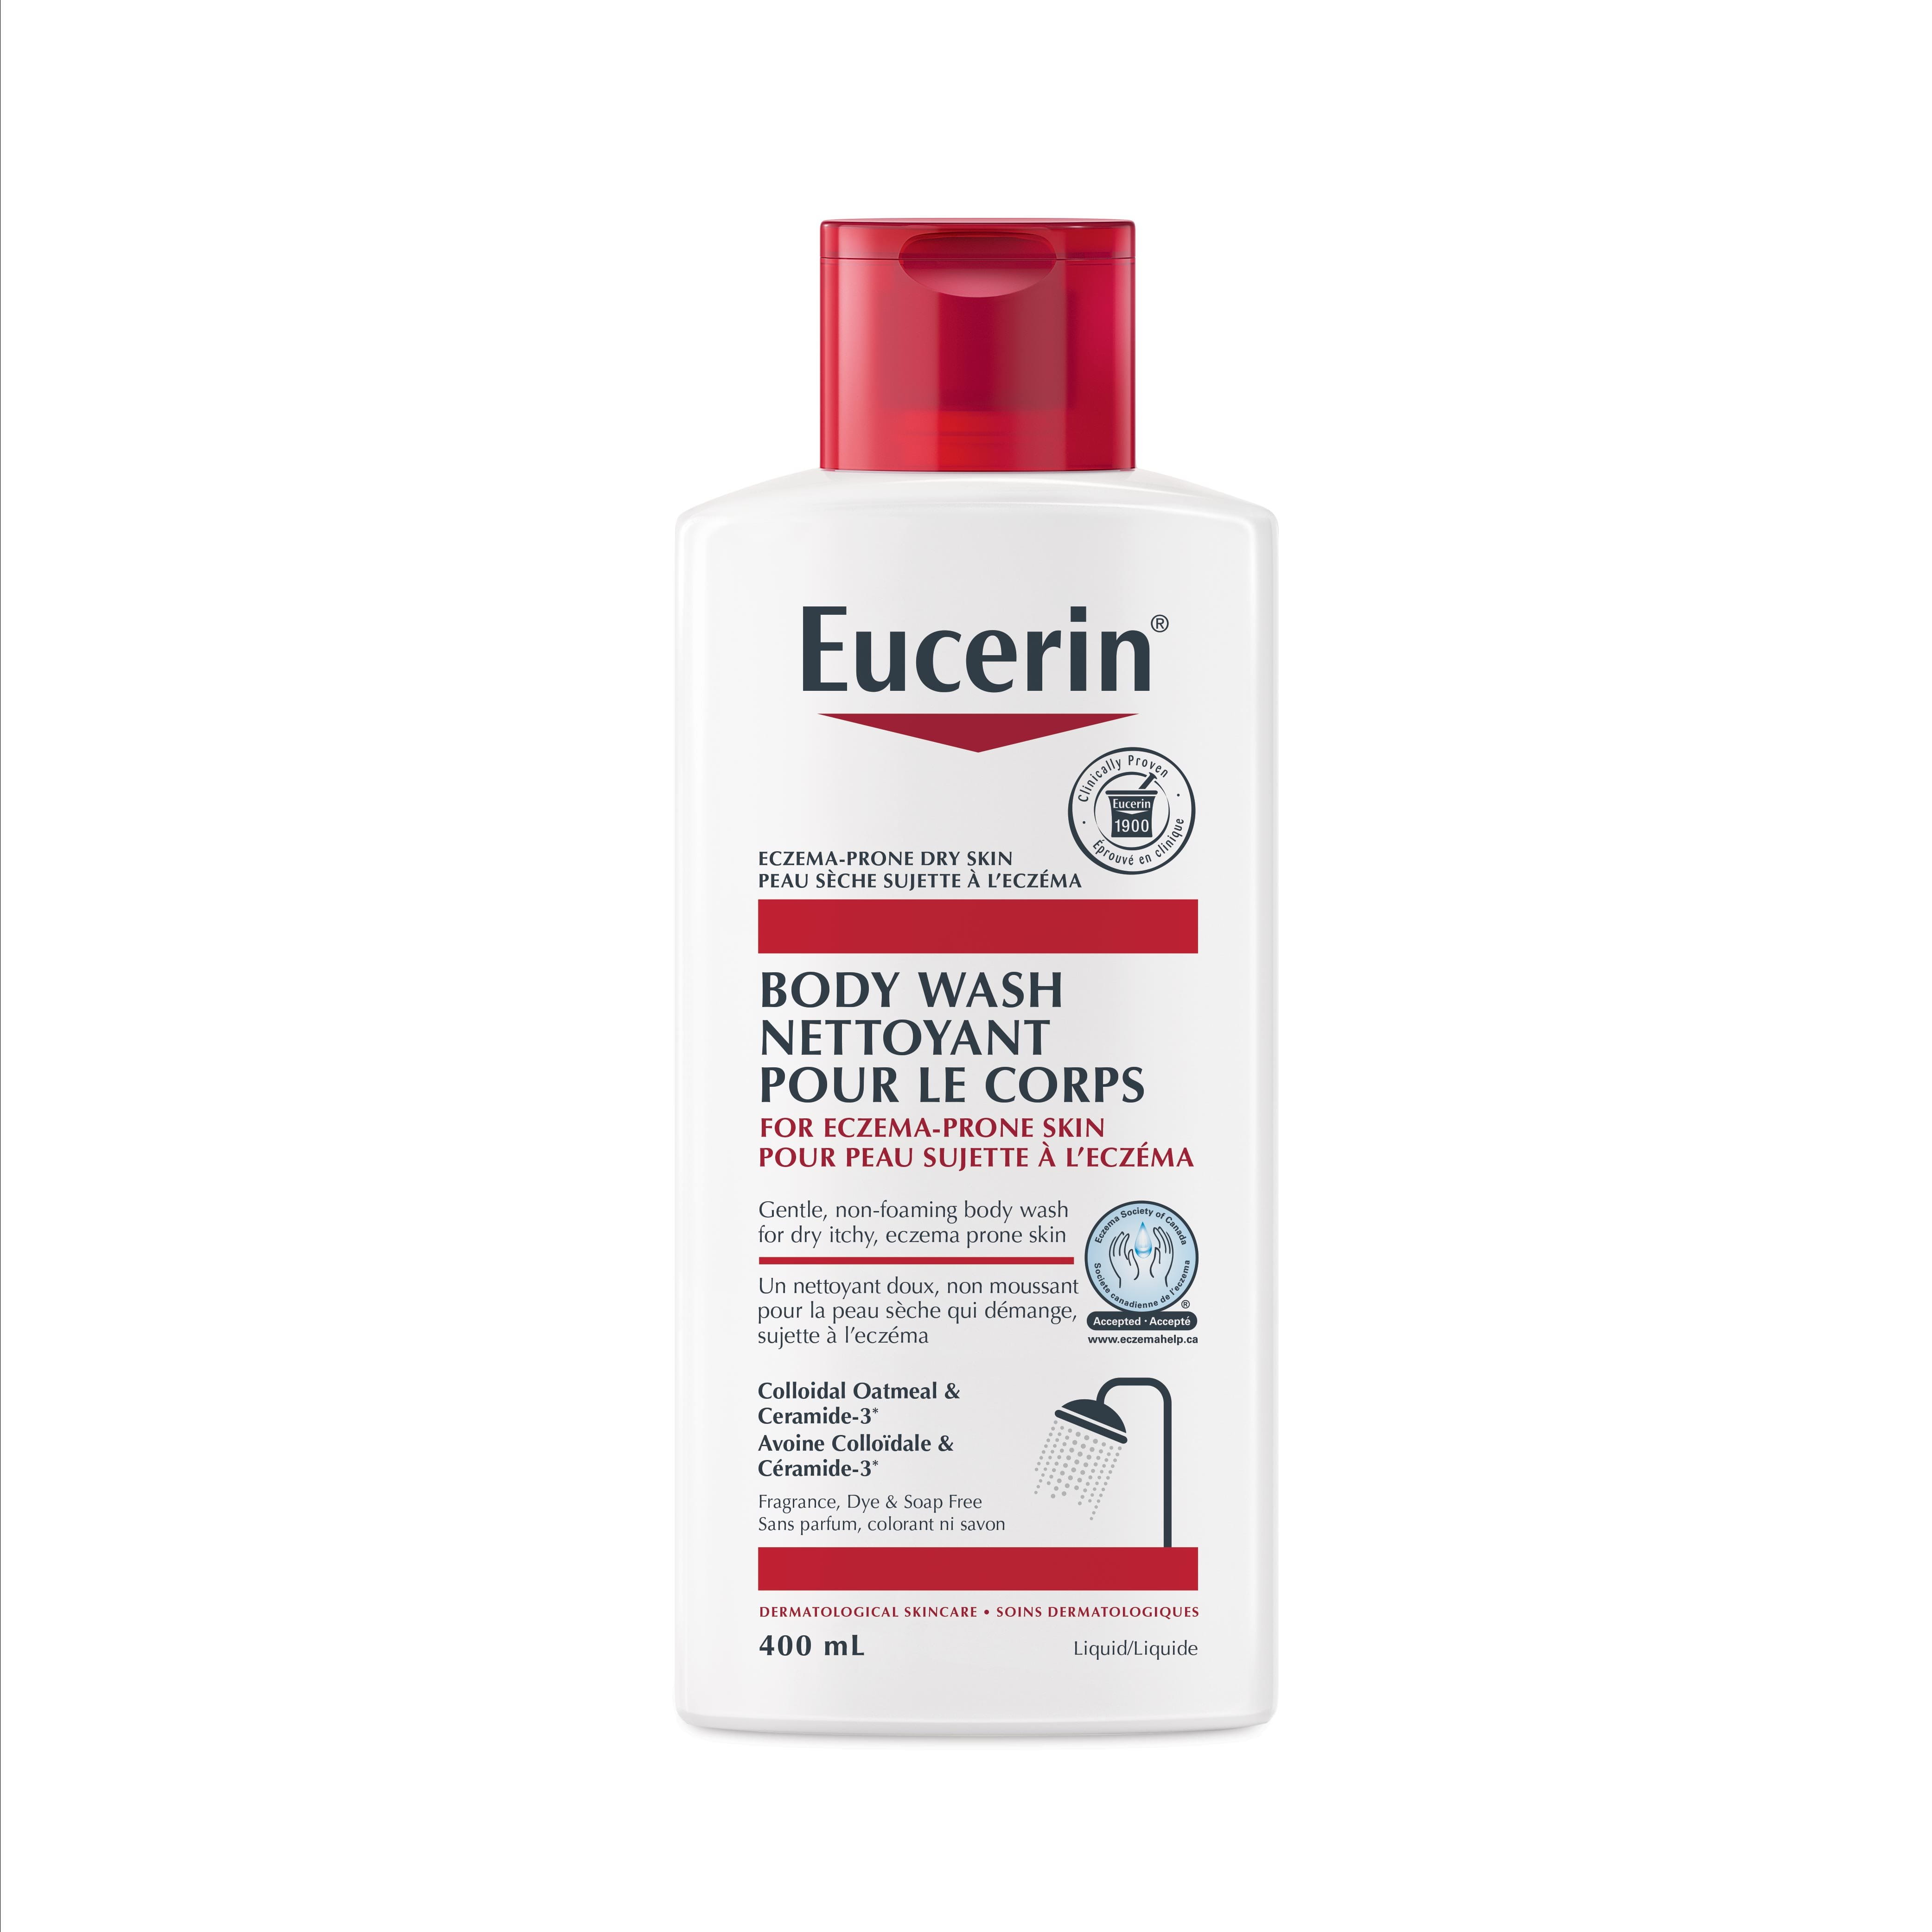  Eucerin Body Wash For Eczema Prone Skin